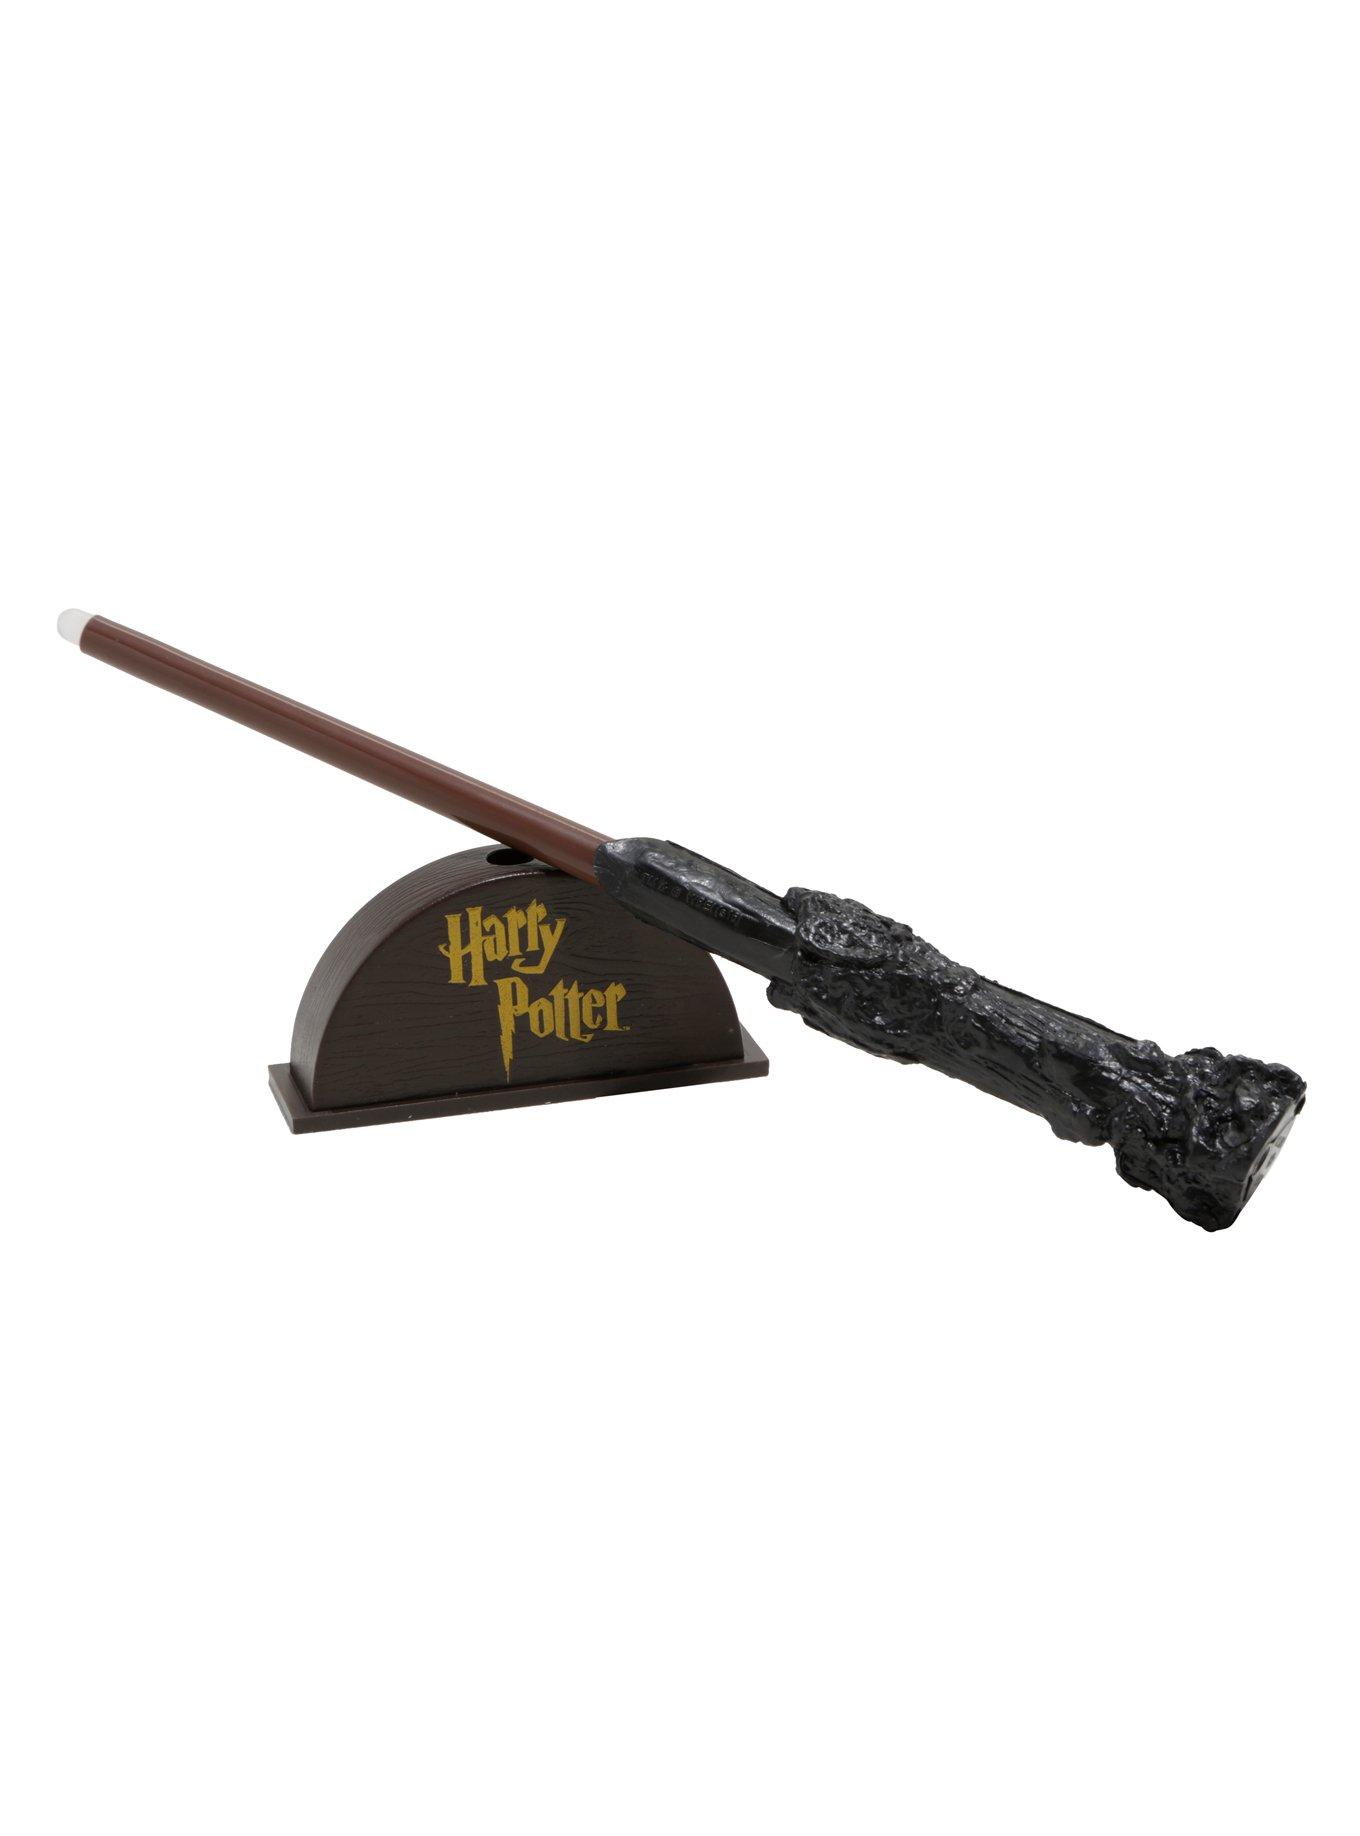 Harry Potter Harry Potter's Wand With Sticker Kit, , alternate